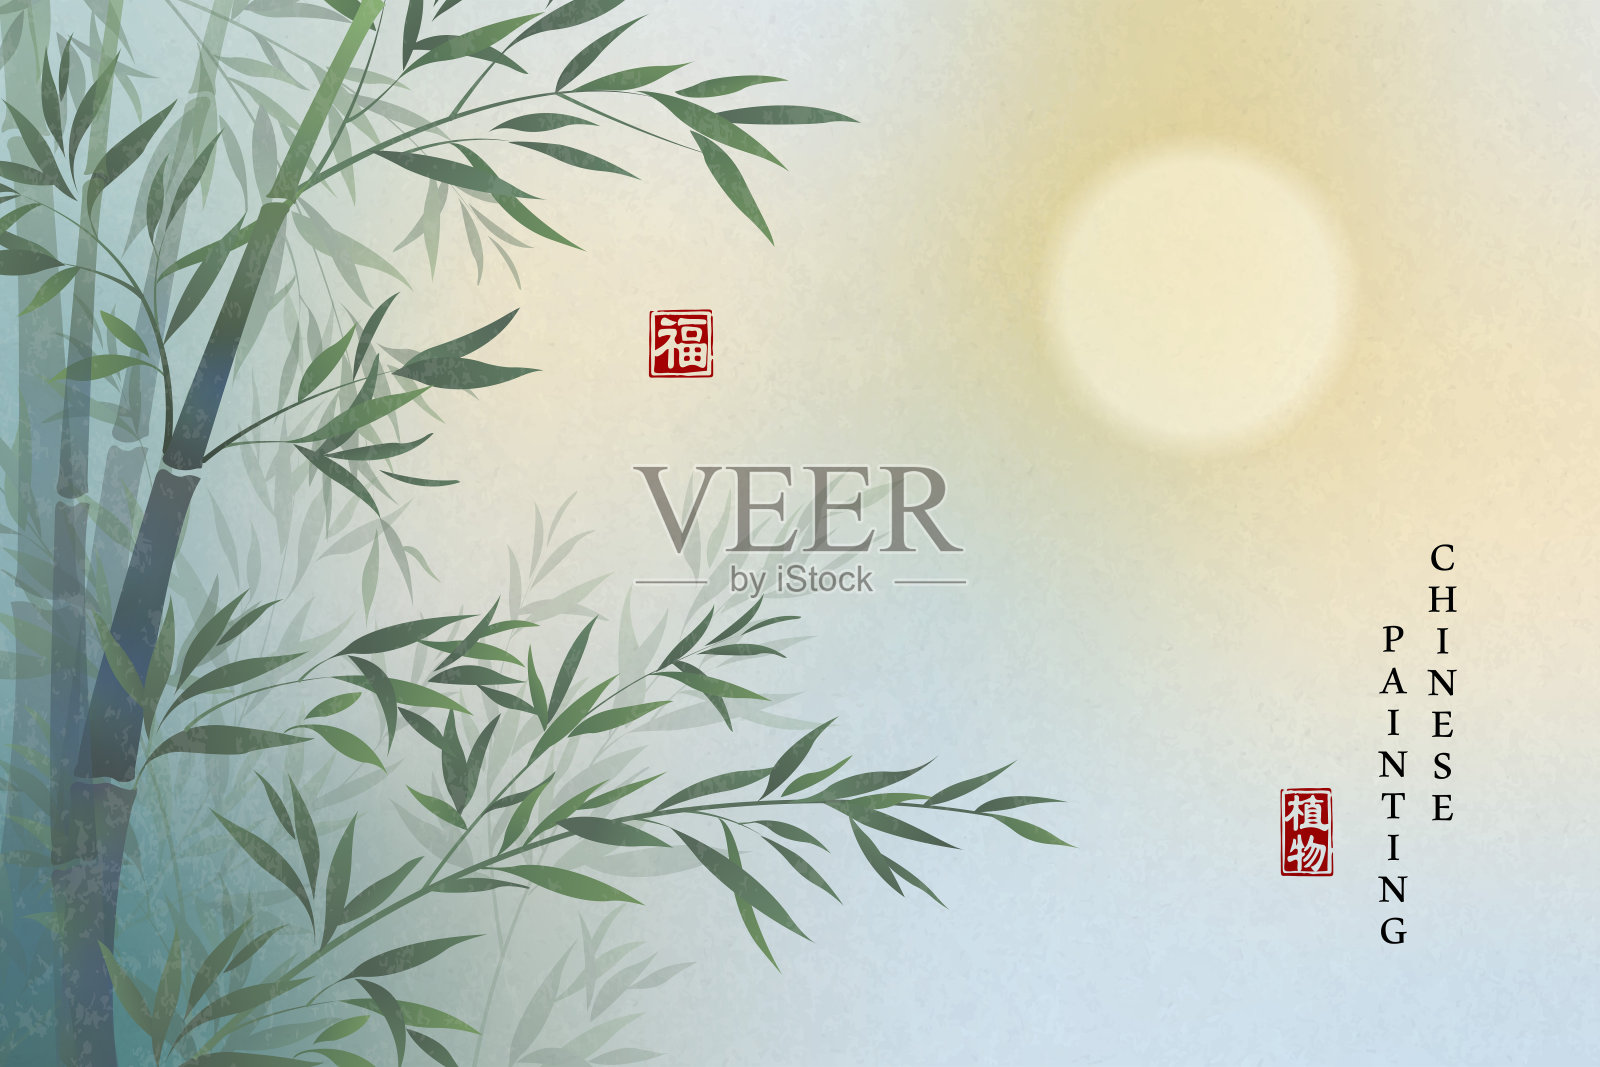 中国水墨画艺术背景植物优雅的风景竹景和满月的夜晚。中文翻译:植物和祝福。插画图片素材